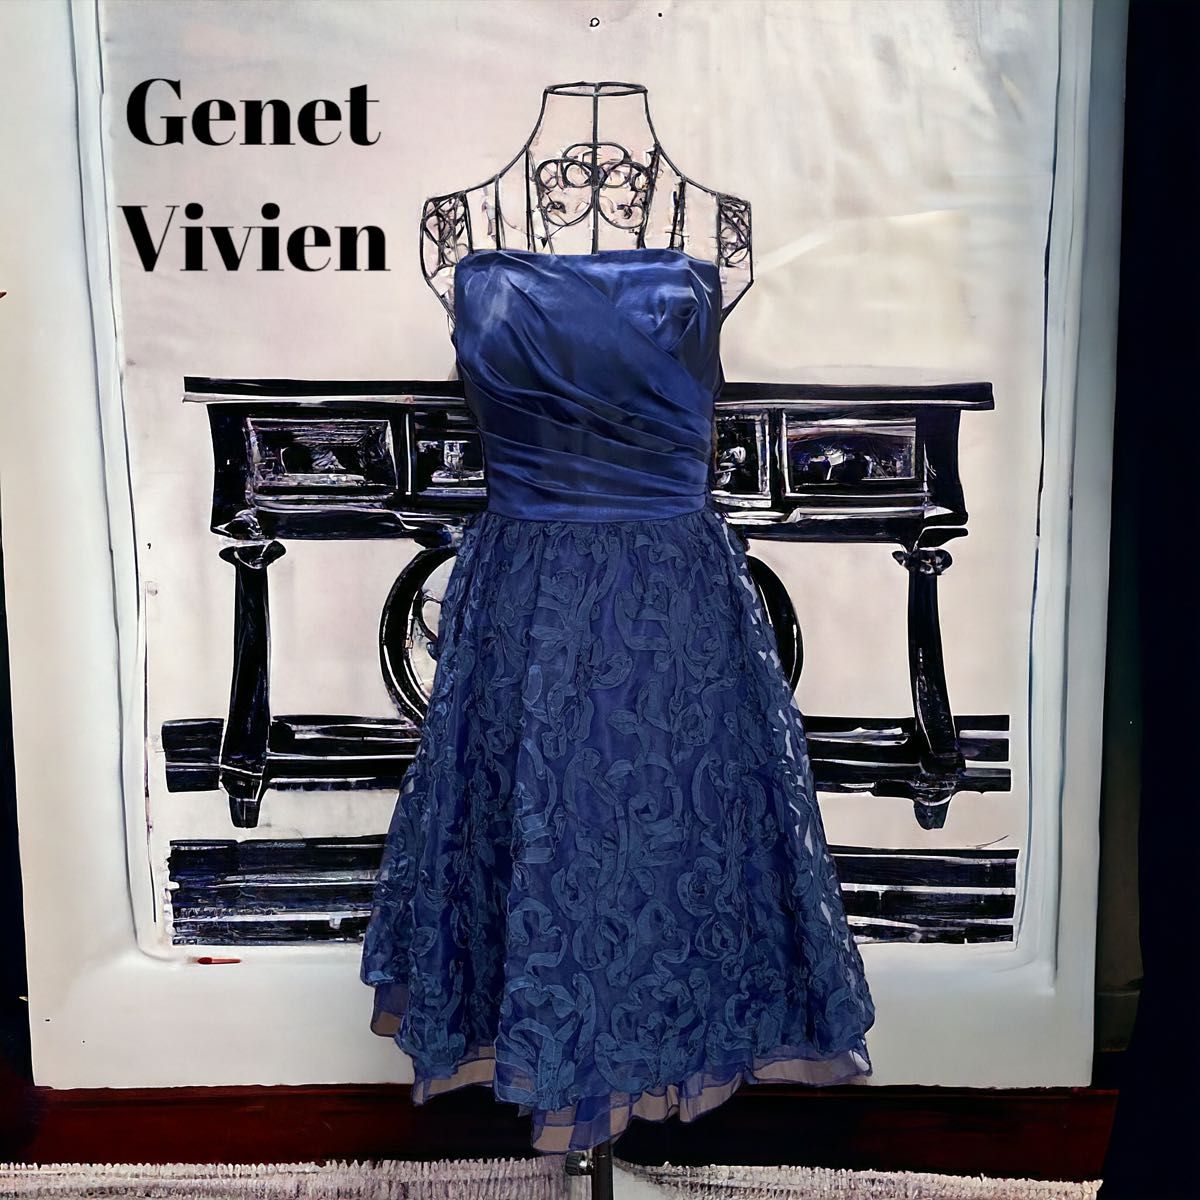 Genet Vivien ジュネビビアン 高級 パーティードレス ワンピース 発表会 ネイビー 9号 日本製《クリーニング済み》